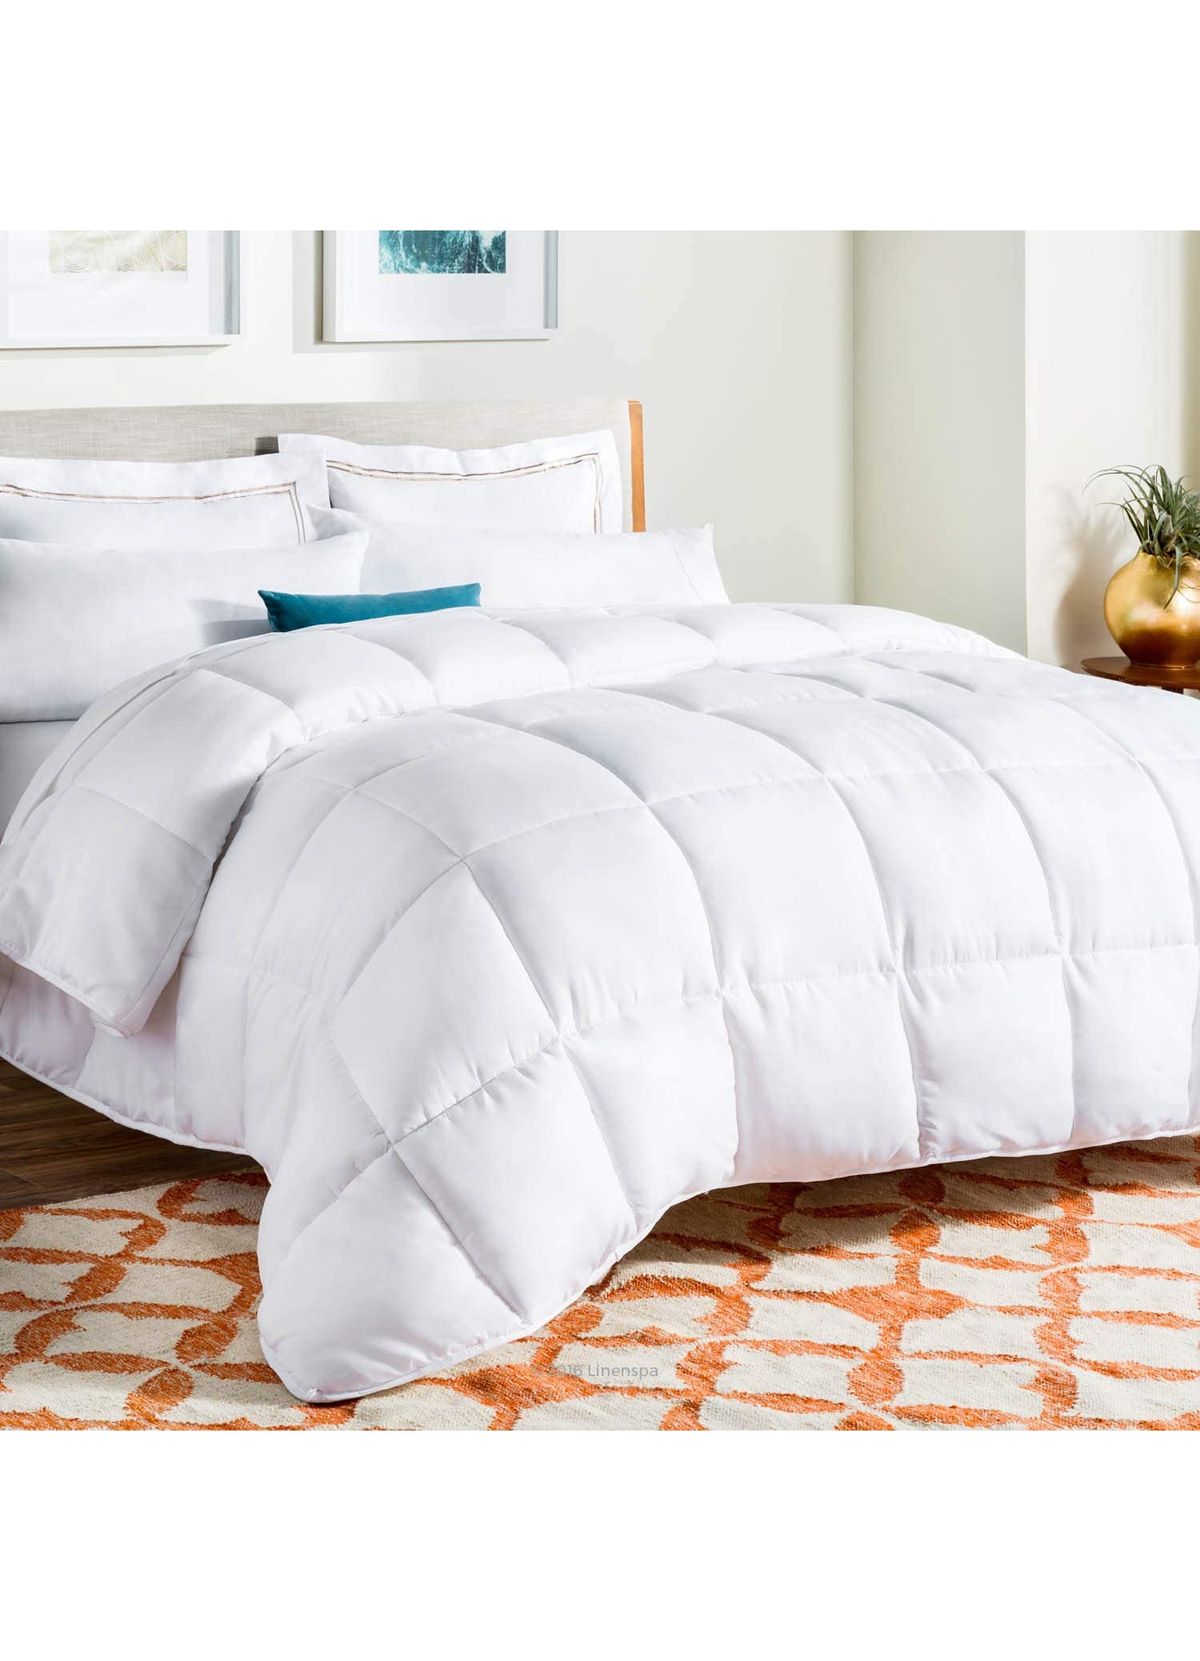 Τα 7 καλύτερα King Size Comforters για όλα τα είδη ύπνου